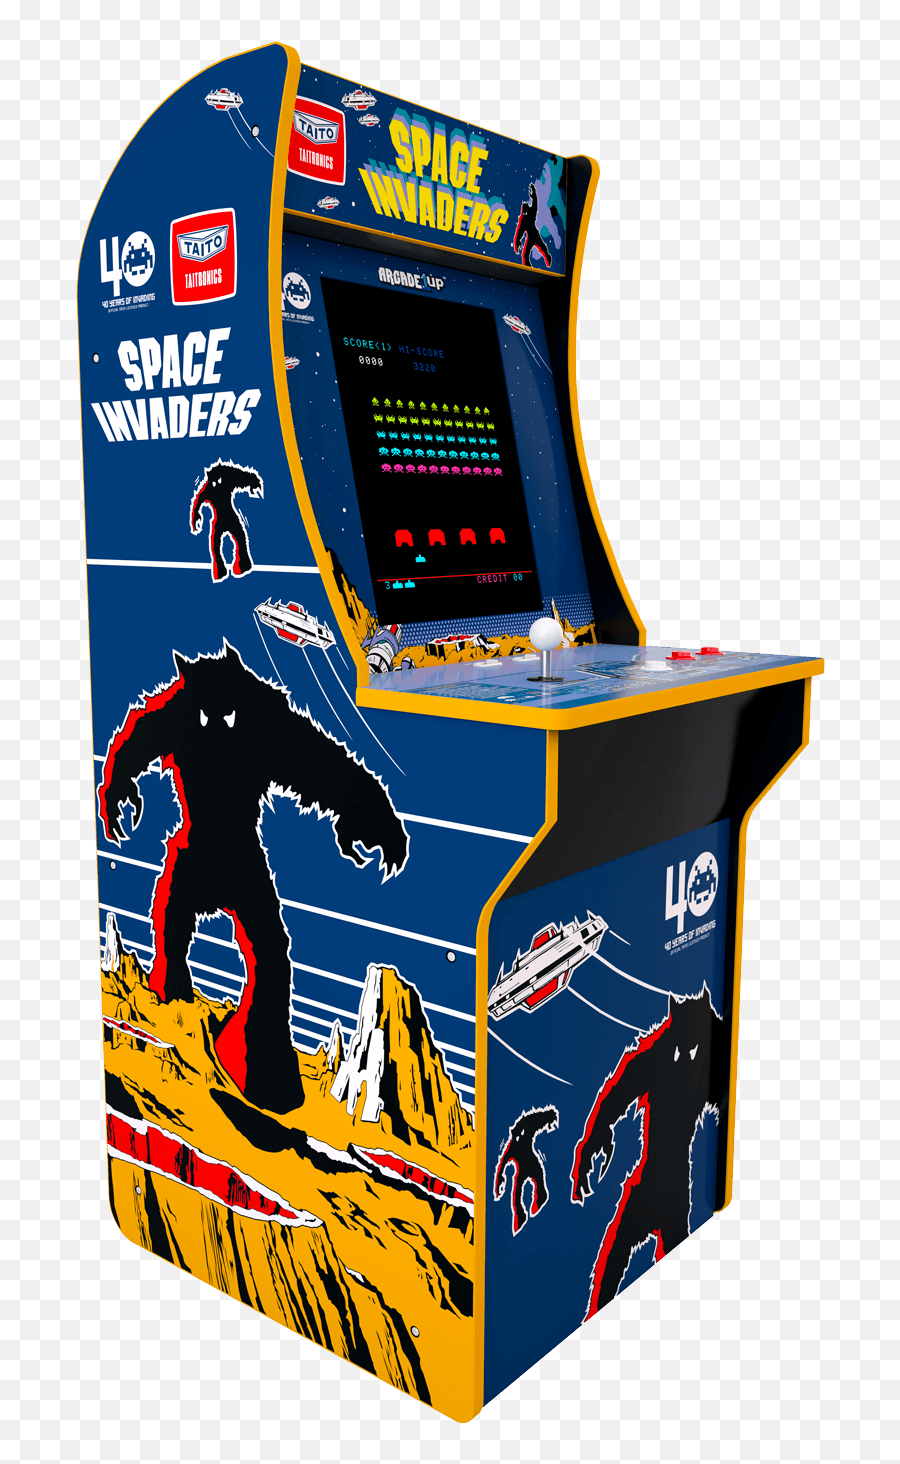 Space Invaders Arcade Cabinet - Arcade1up Arcade Games Space Invaders Png,Space Invaders Png